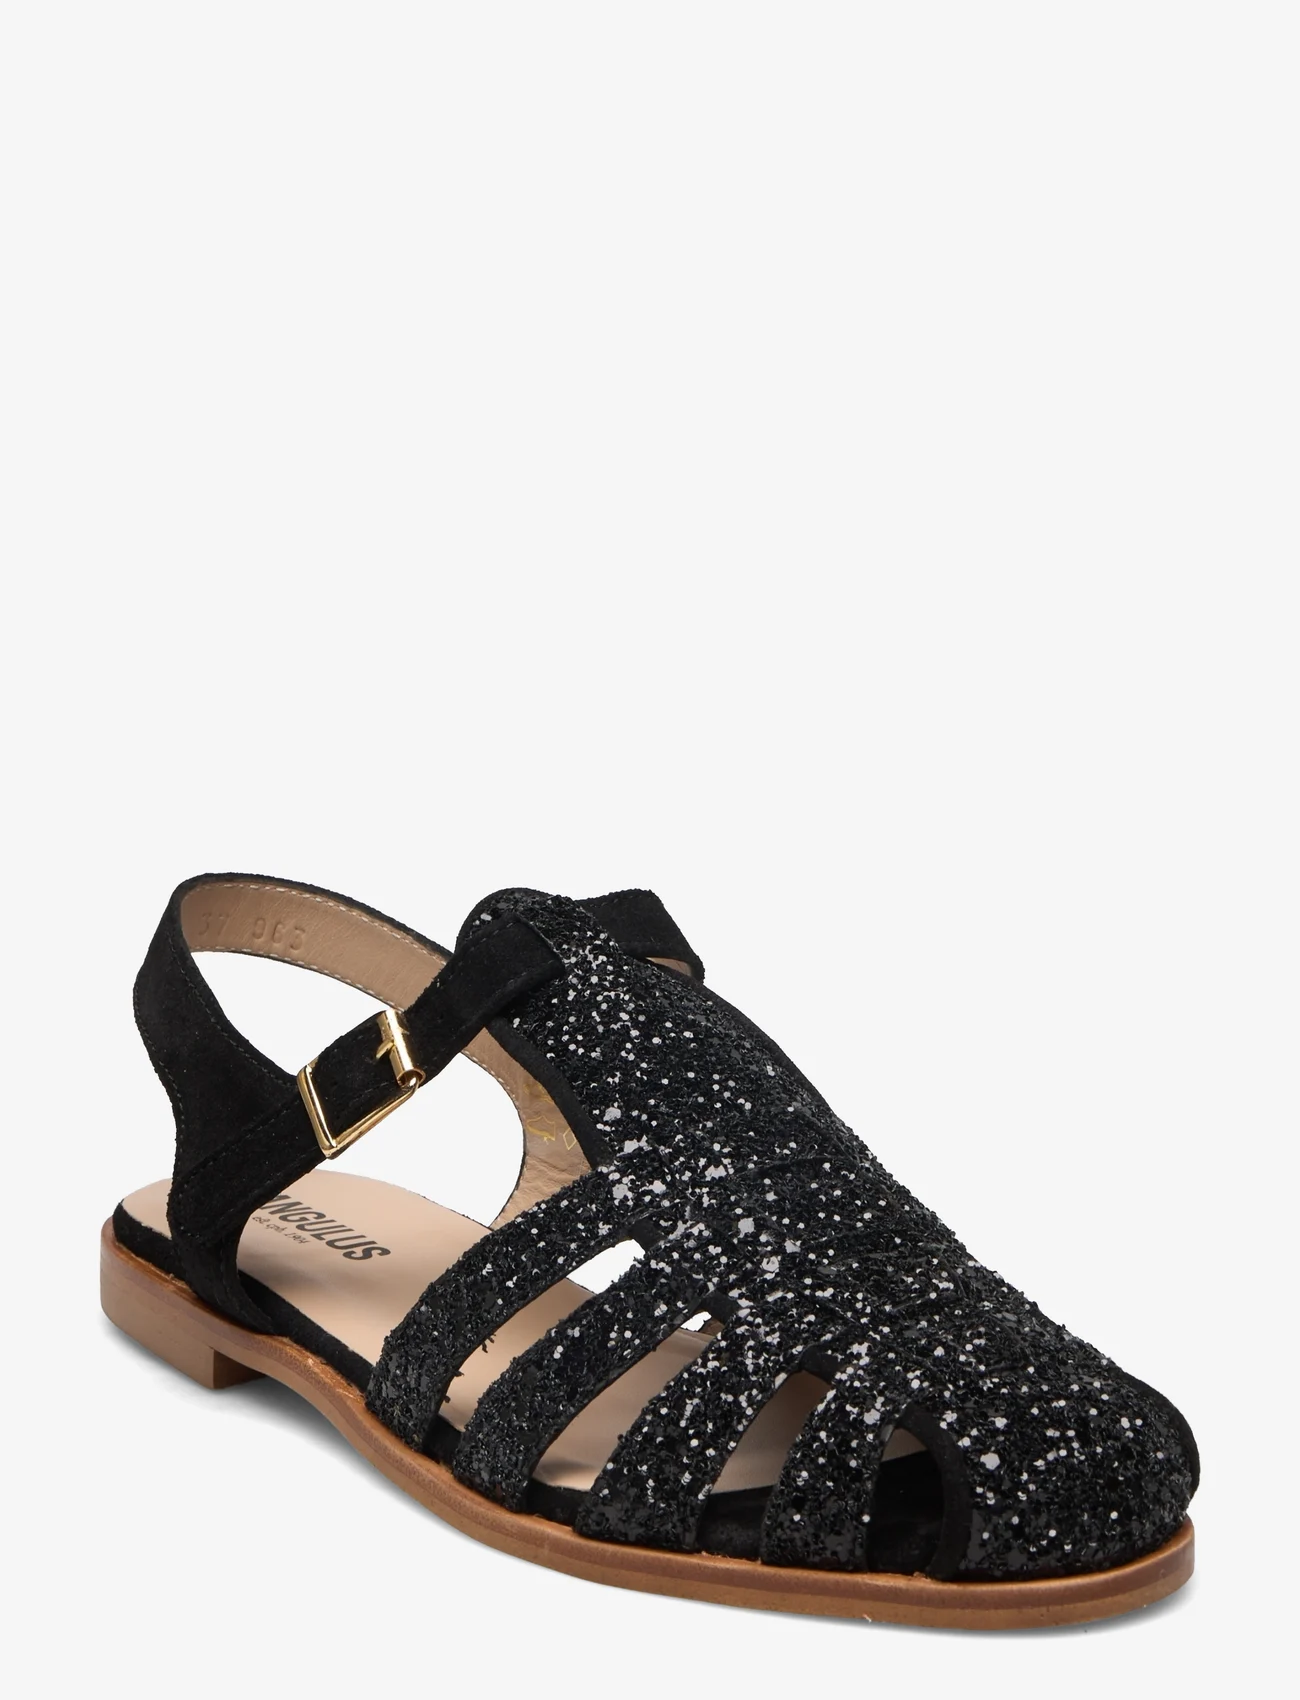 ANGULUS - Sandals - flat - closed toe - op - festkläder till outletpriser - 2486/1163 black glit/black - 0